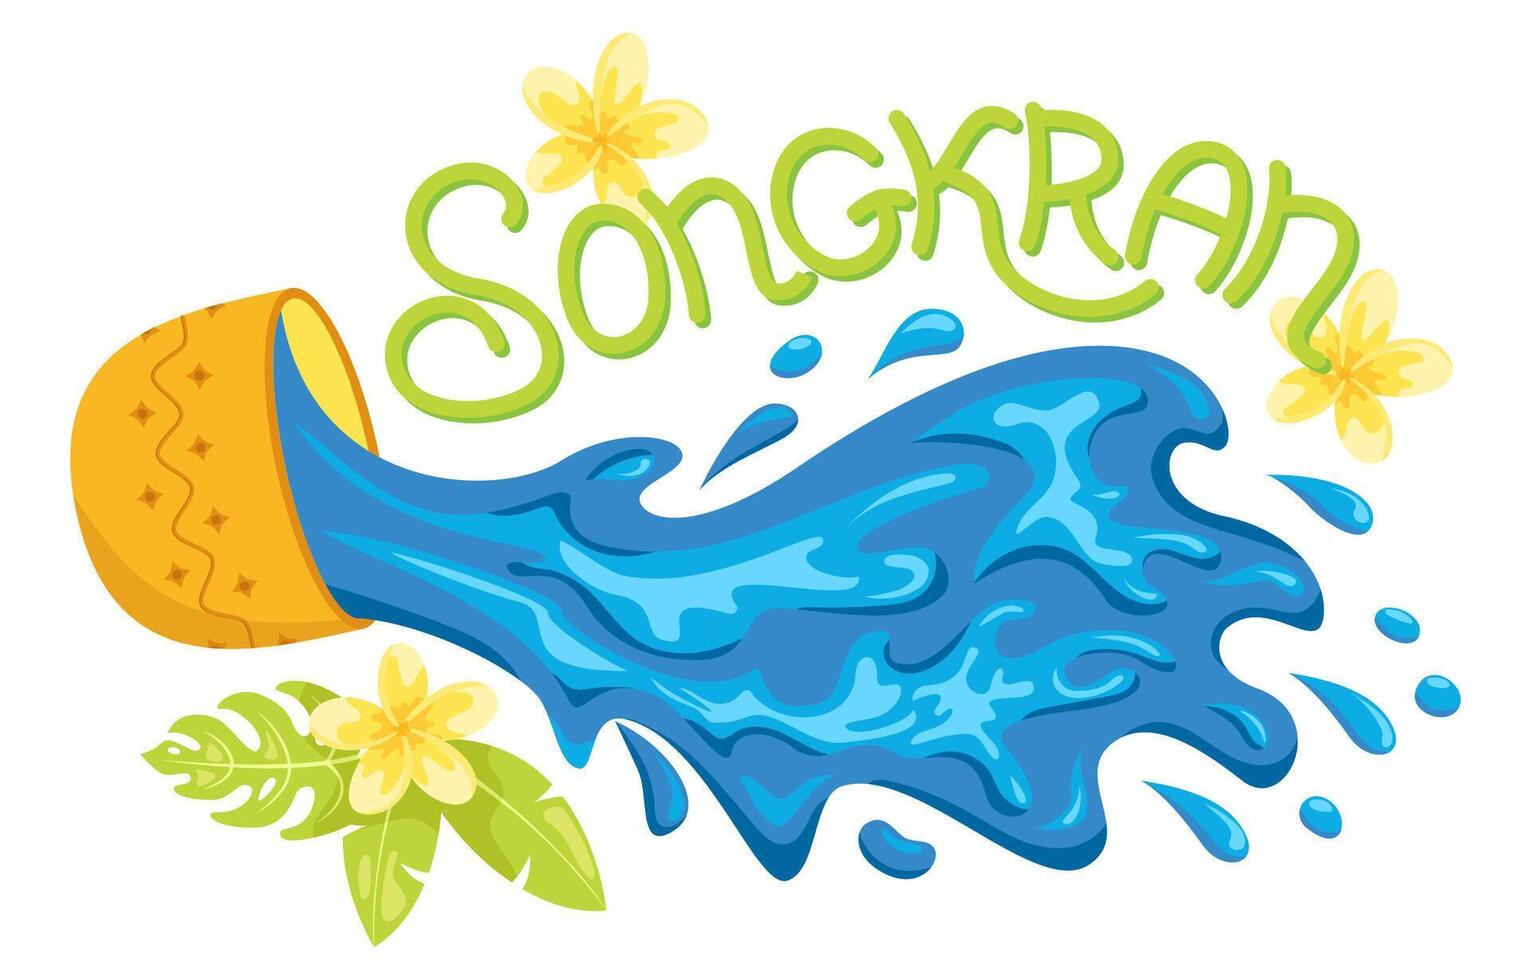 Songkran Wasser Festival. Blau Wasser spritzt aus von ein golden Schüssel mit Beschriftung Design. Thailand Neu Jahre Tag. horizontal Banner Design zum Einladung, Karte, Flyer, Broschüre, Netz zum Veranstaltung vektor